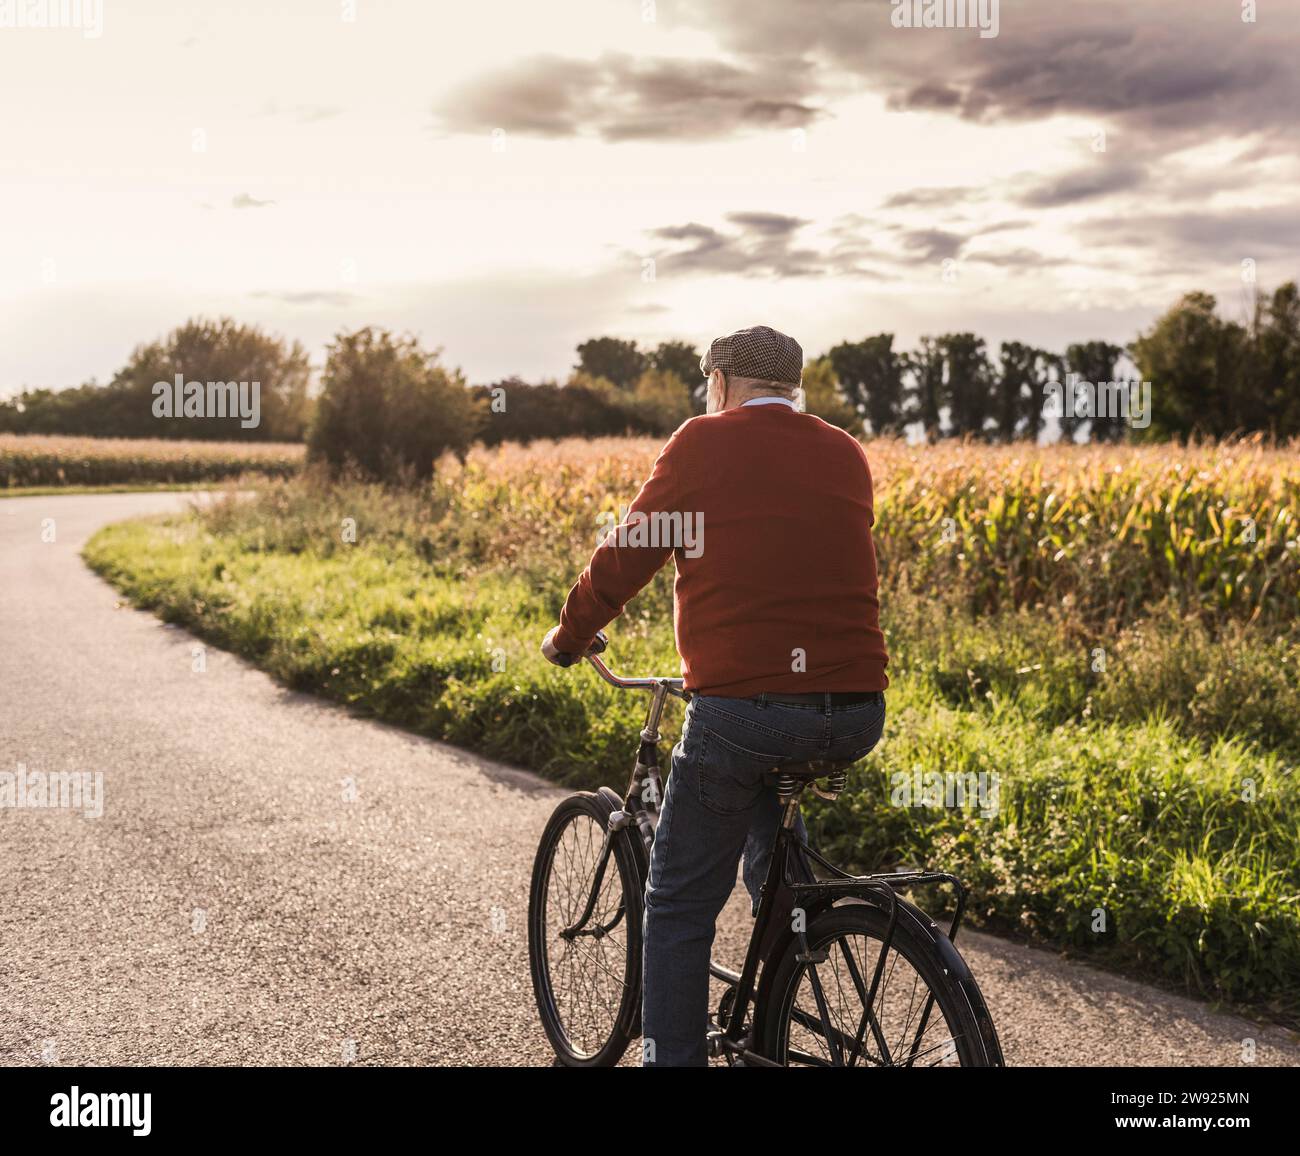 Homme senior faisant du vélo sur la route près du champ Banque D'Images